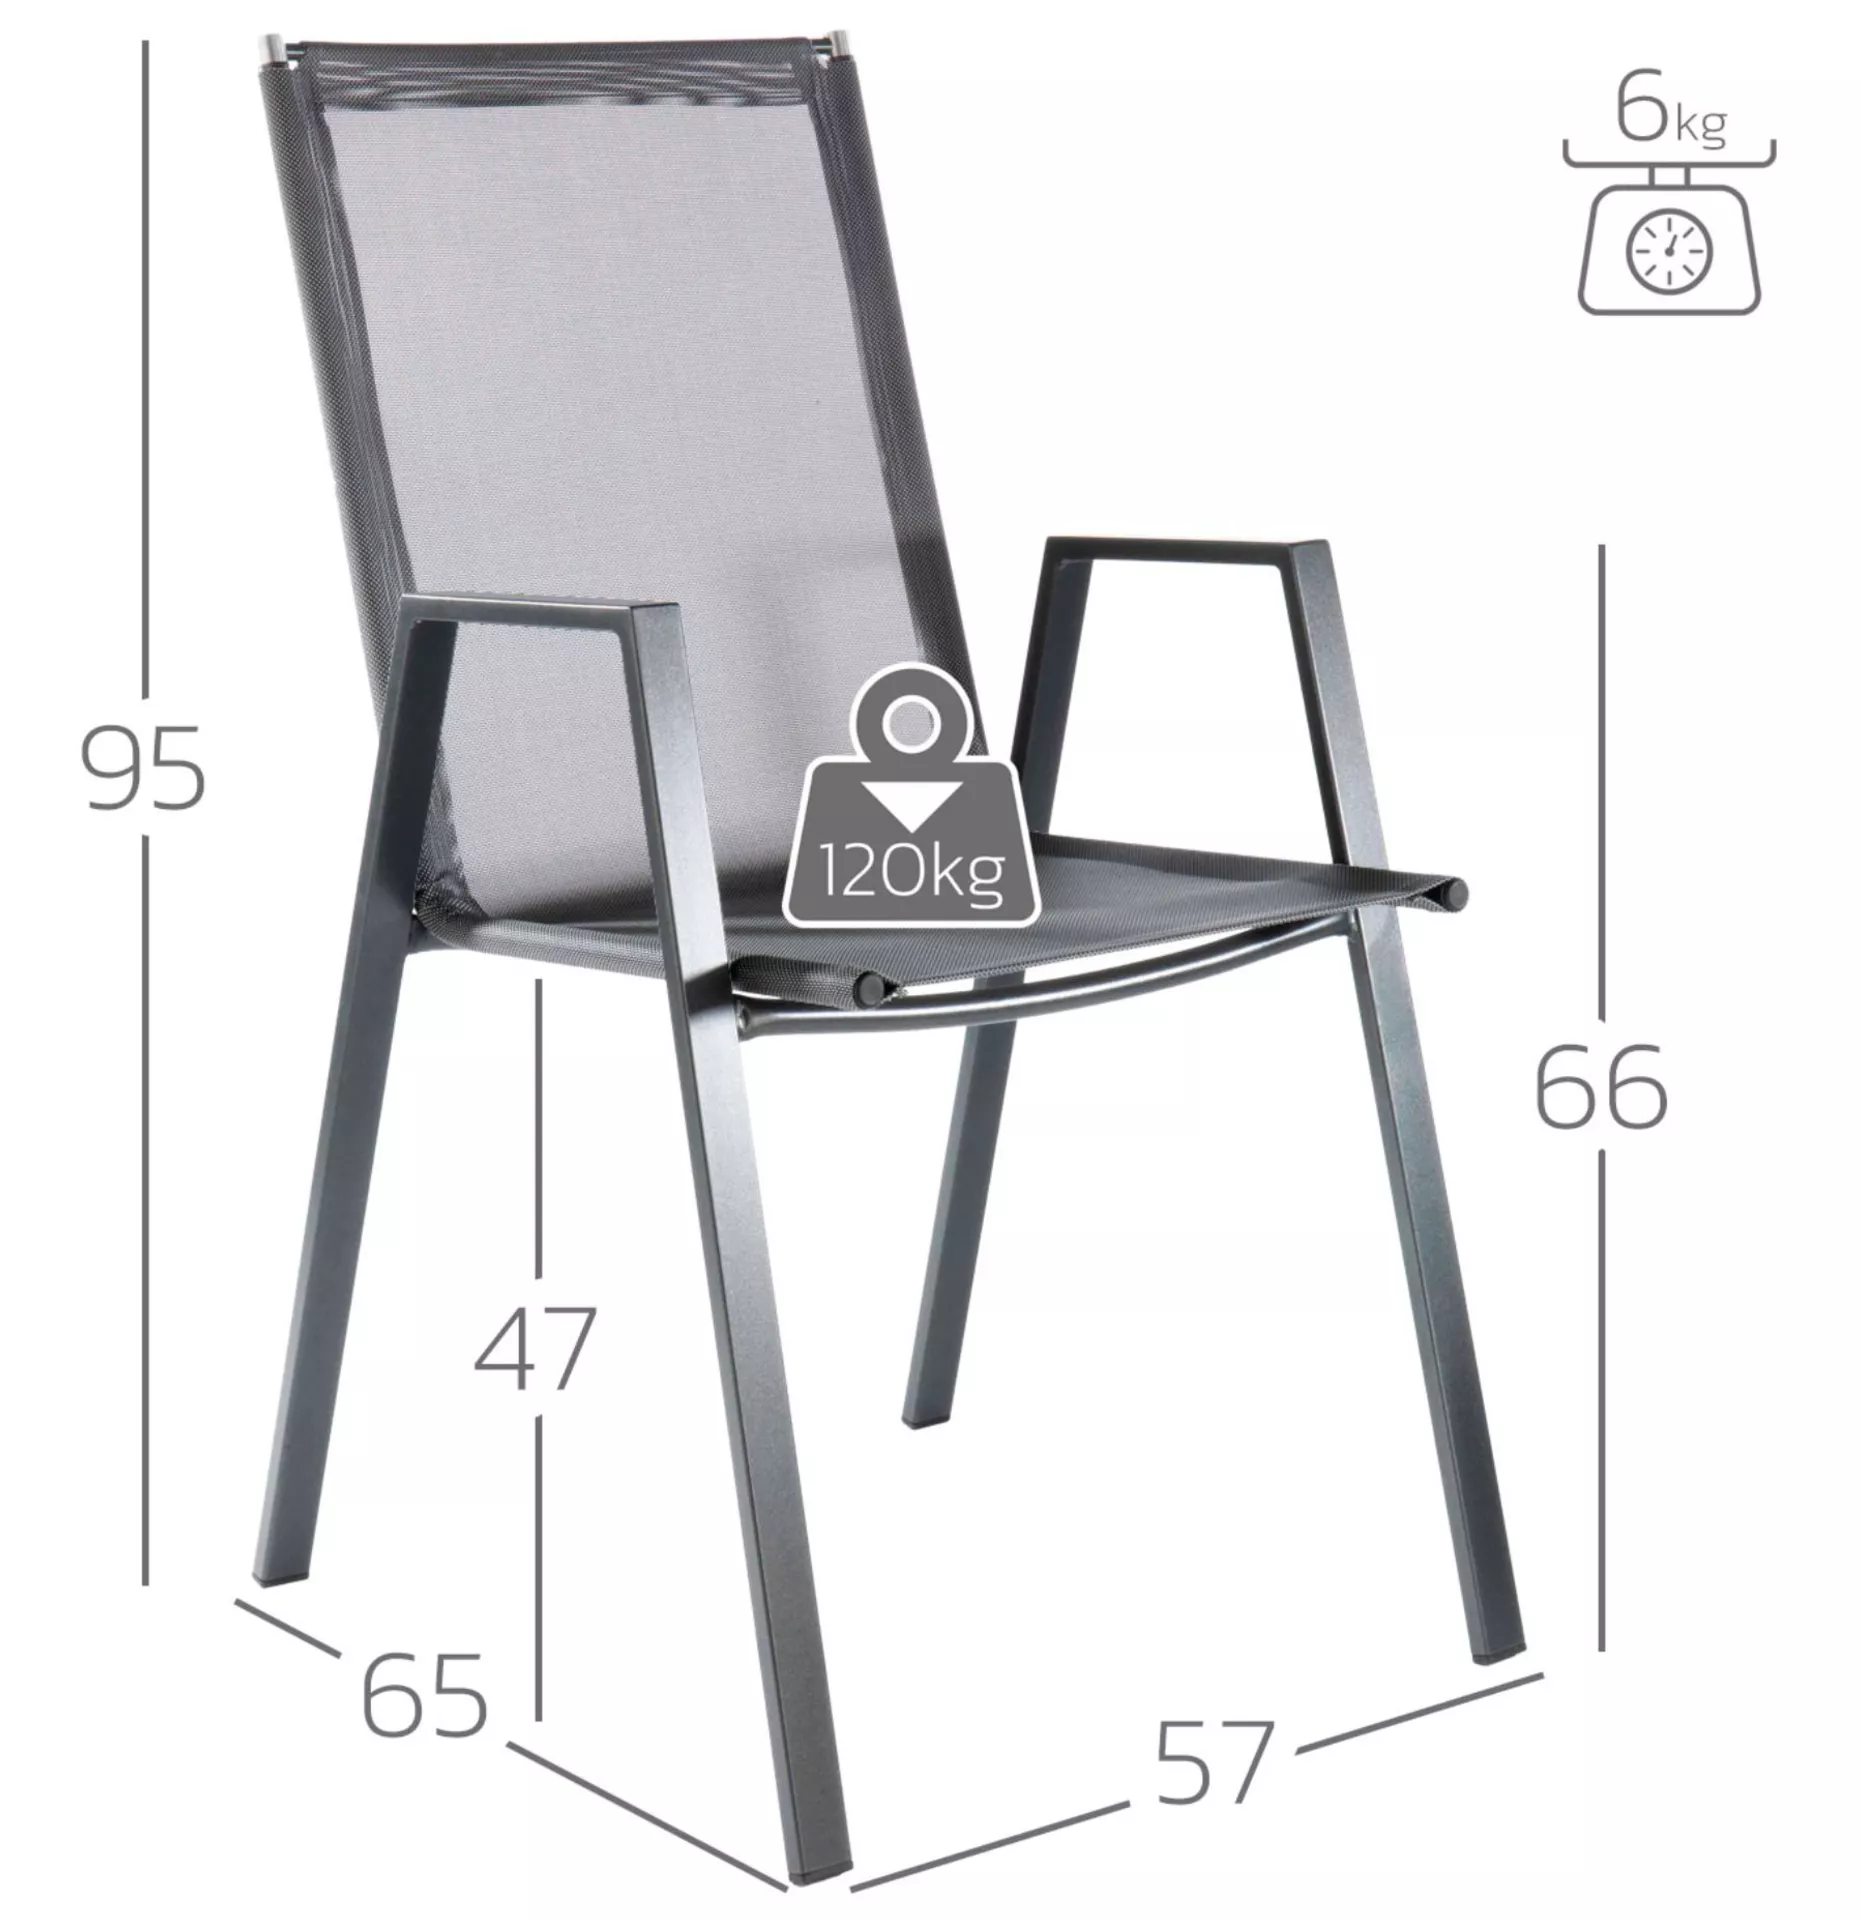 Matten-Sessel Basel Schaffner / Farbe: Grau